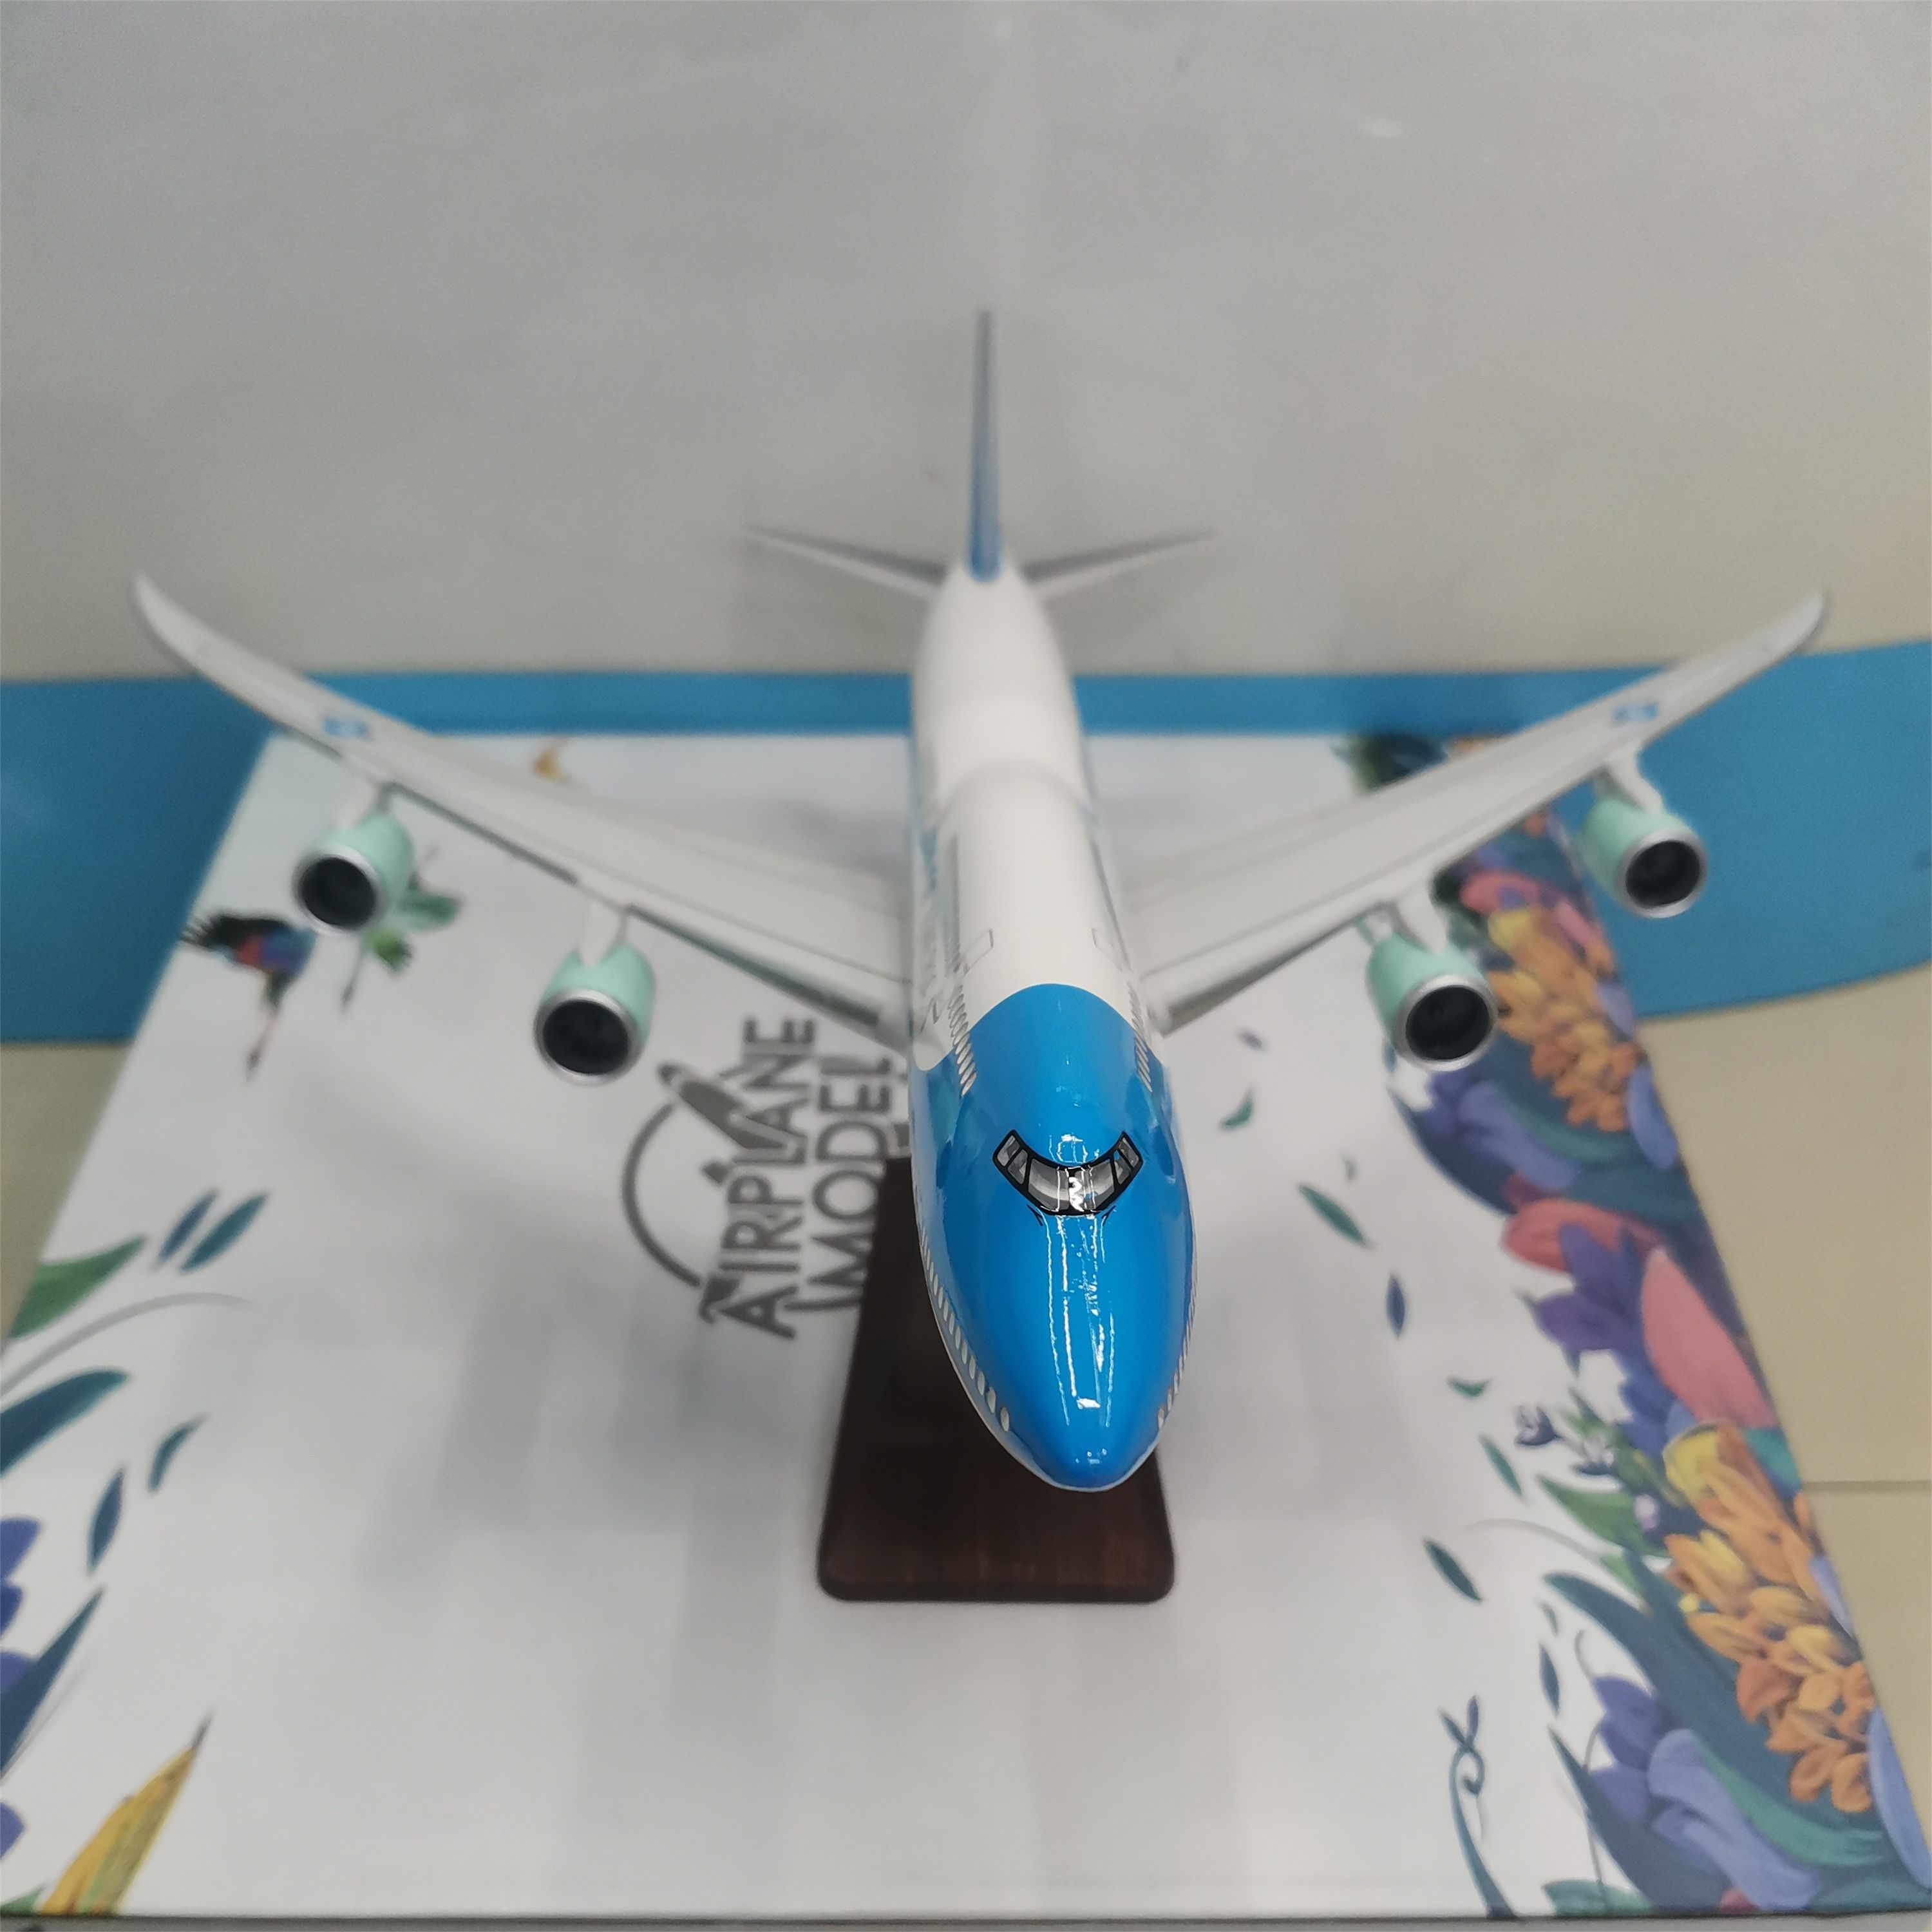 飞机模型（空军一号-美国总统座机747-8）ABS强化合成树脂飞机模型 仿真飞机模型详情图3